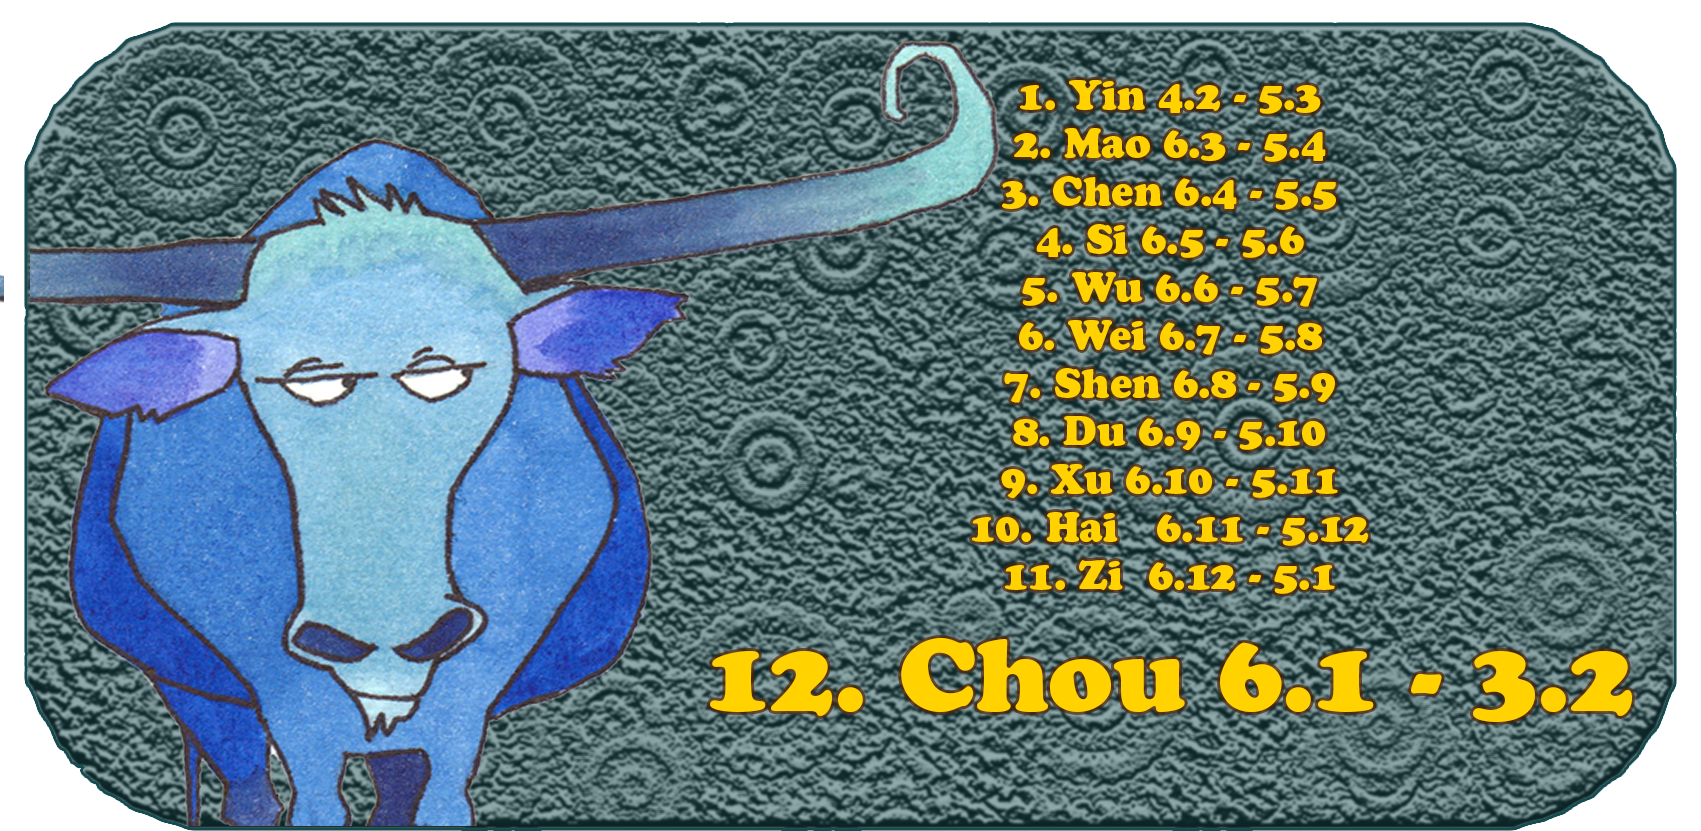 Zodiaco cinese | I dodici animali cinesi | Bue, gennaio, mese 12, Chou